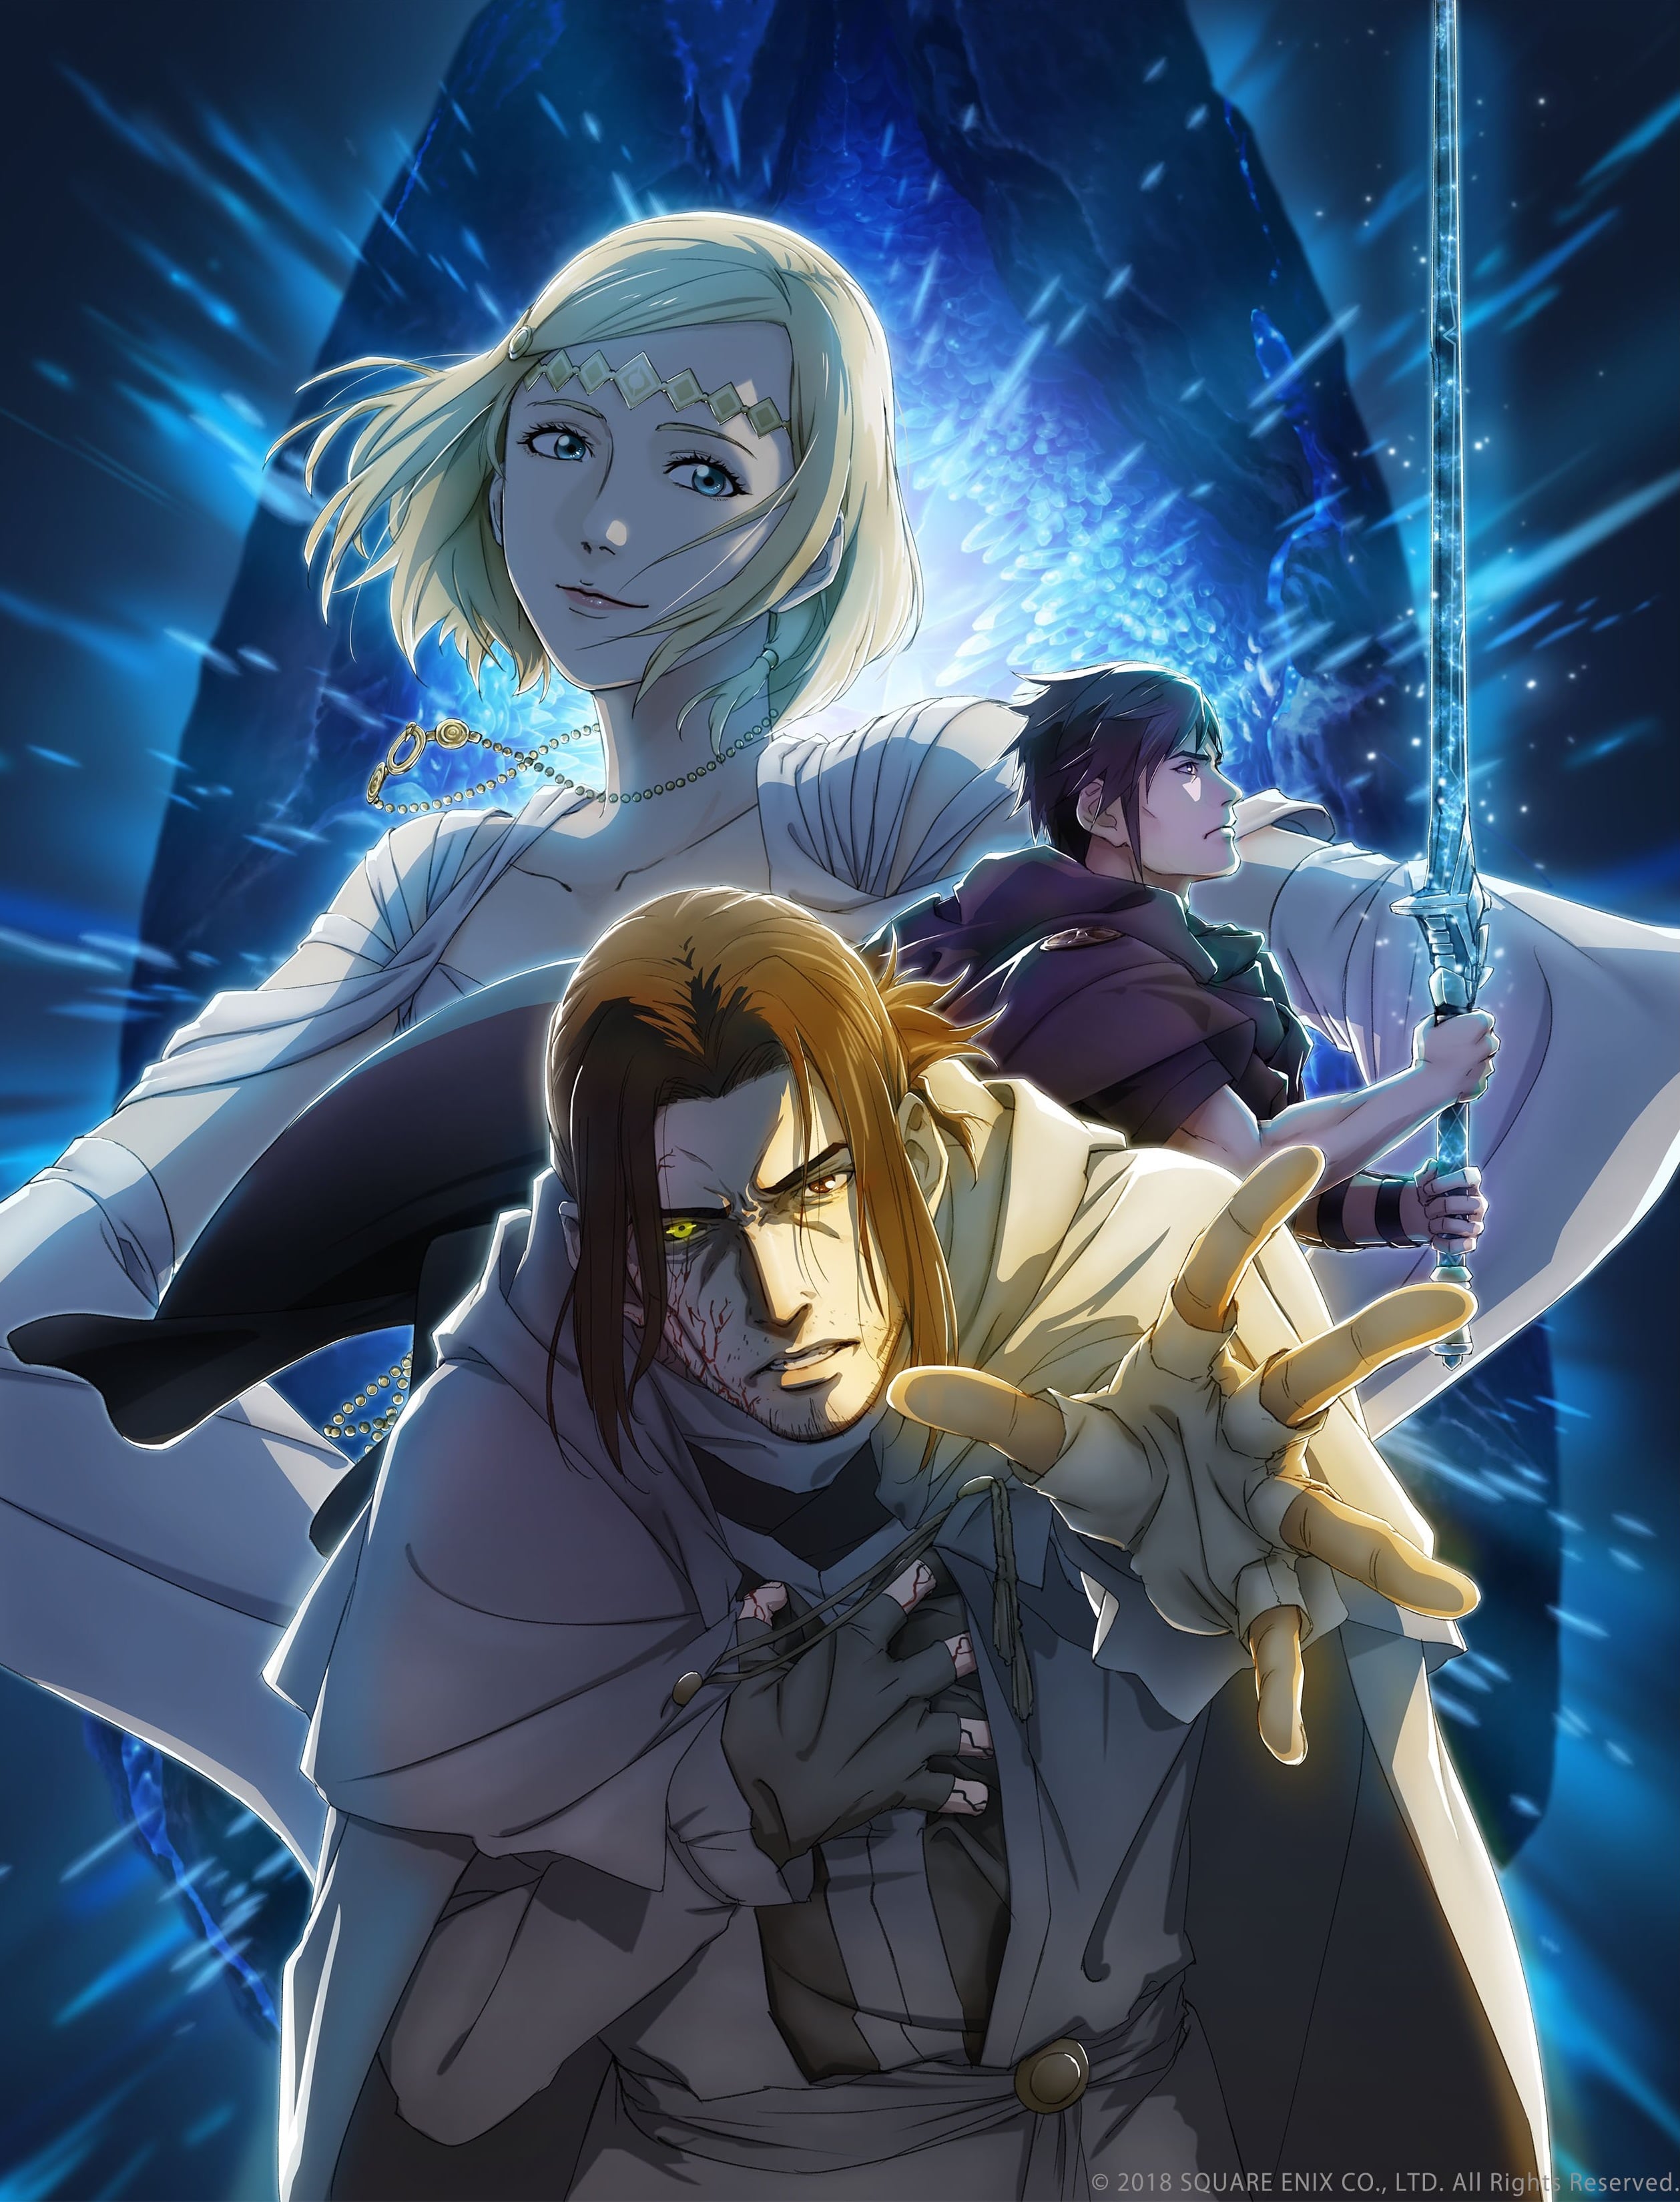 Final Fantasy XV: Episode Ardyn Prologue - Novo anime baseado no jogo!